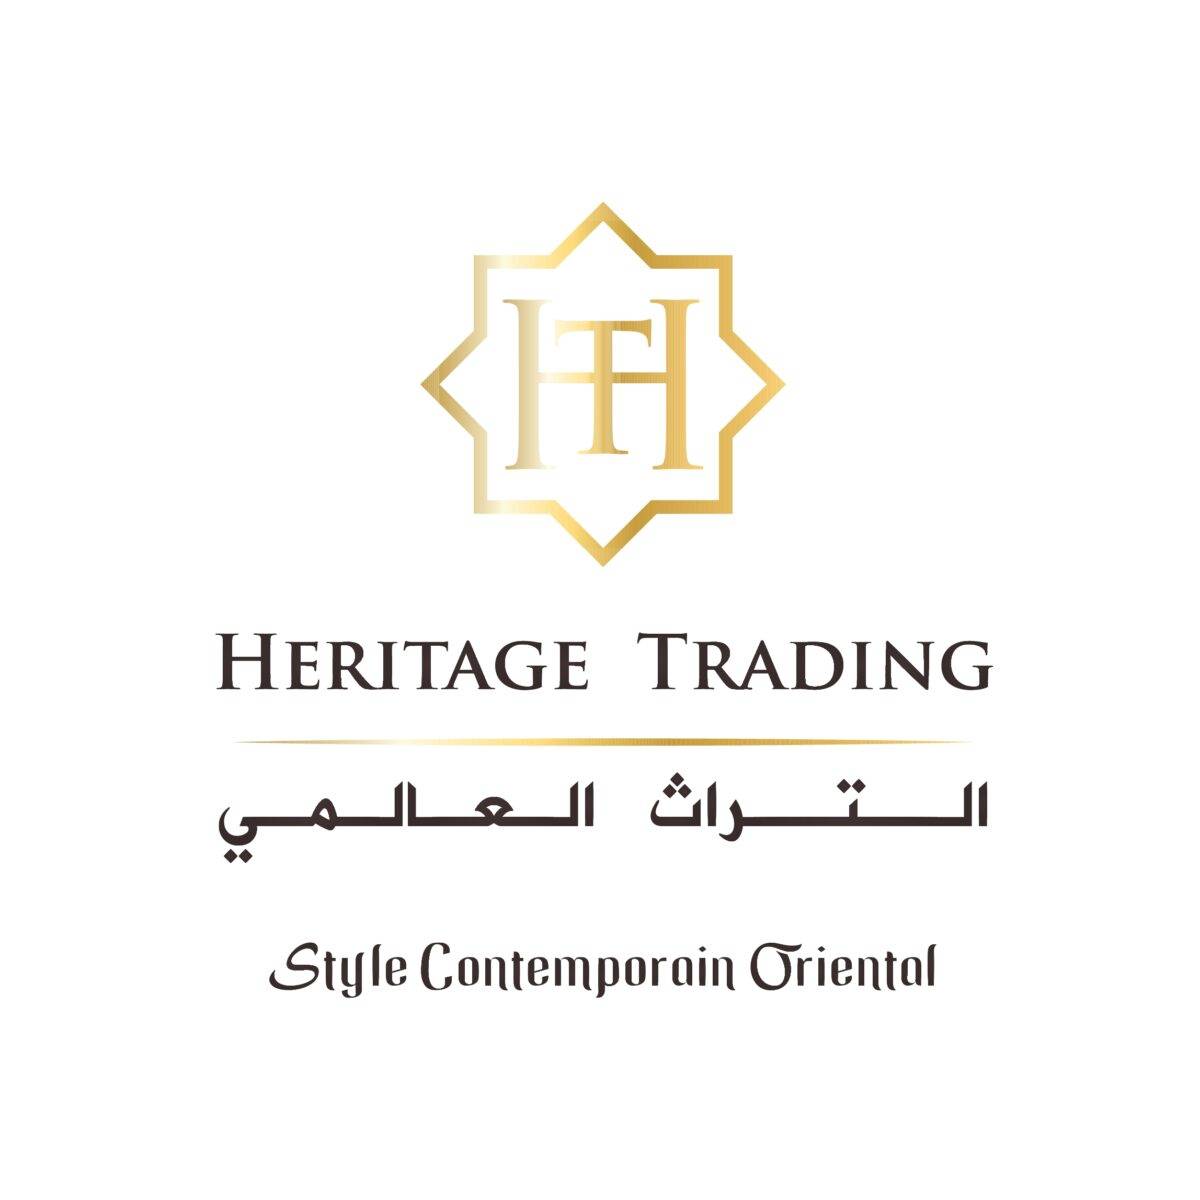 Heritage Trading, Gems et souvenirs à Marrakech